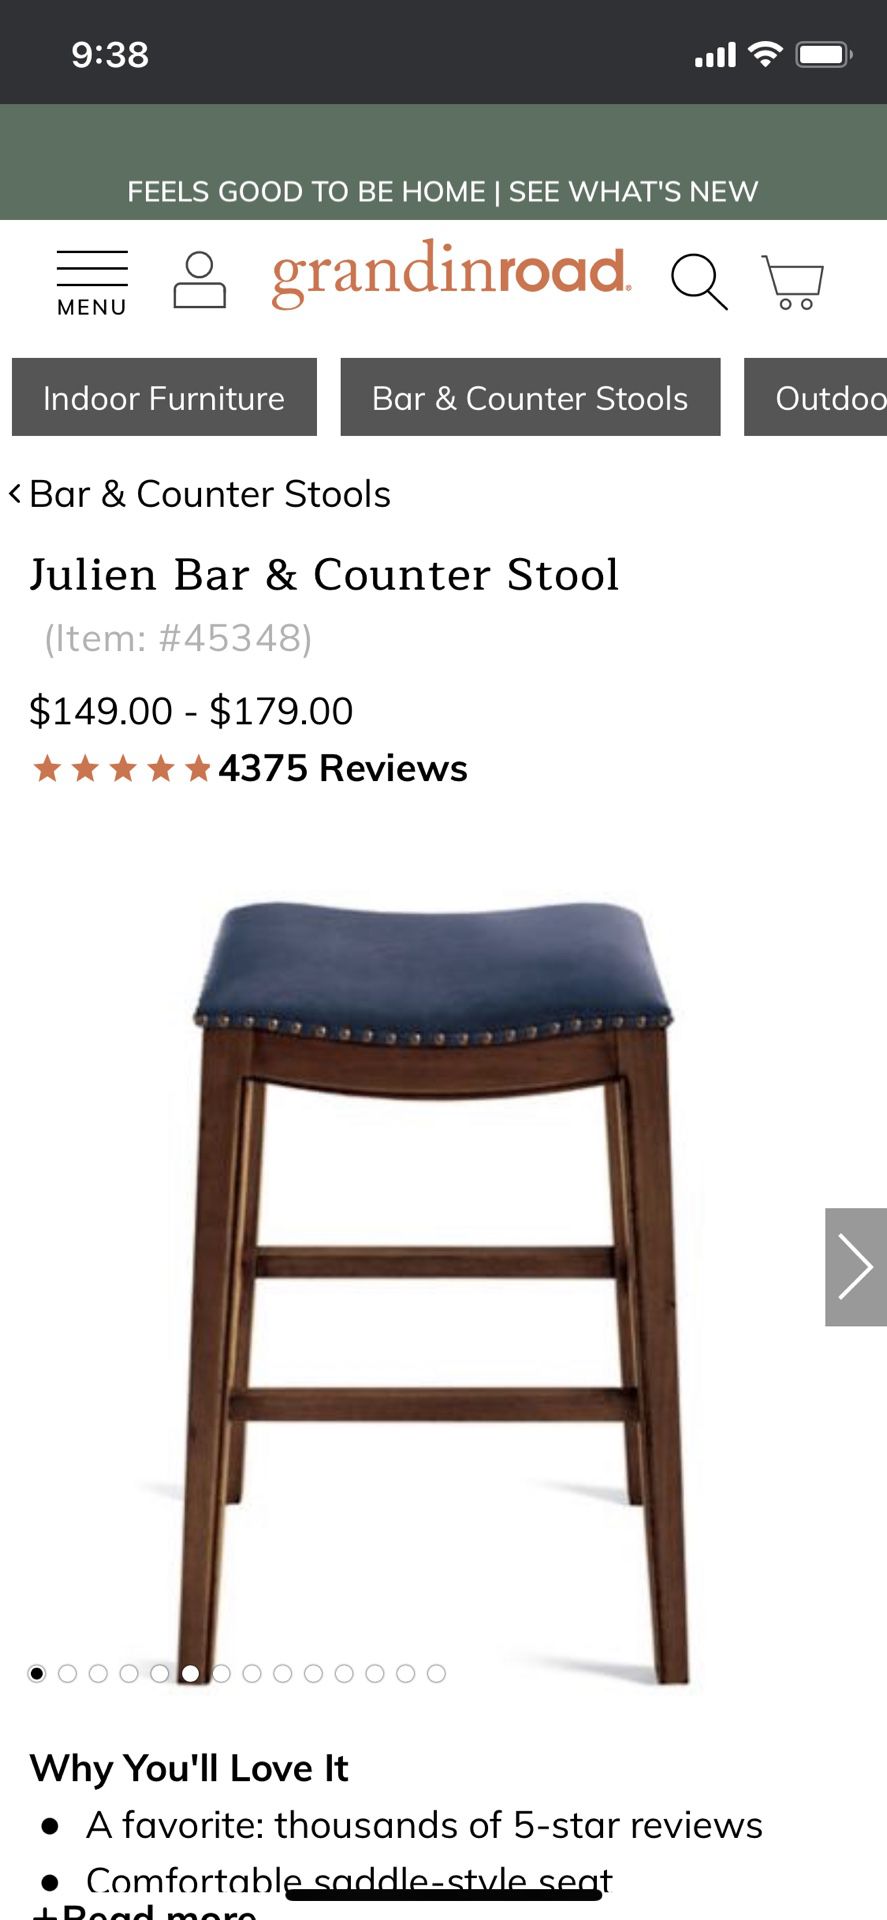 Julien Bar & Counter Stool